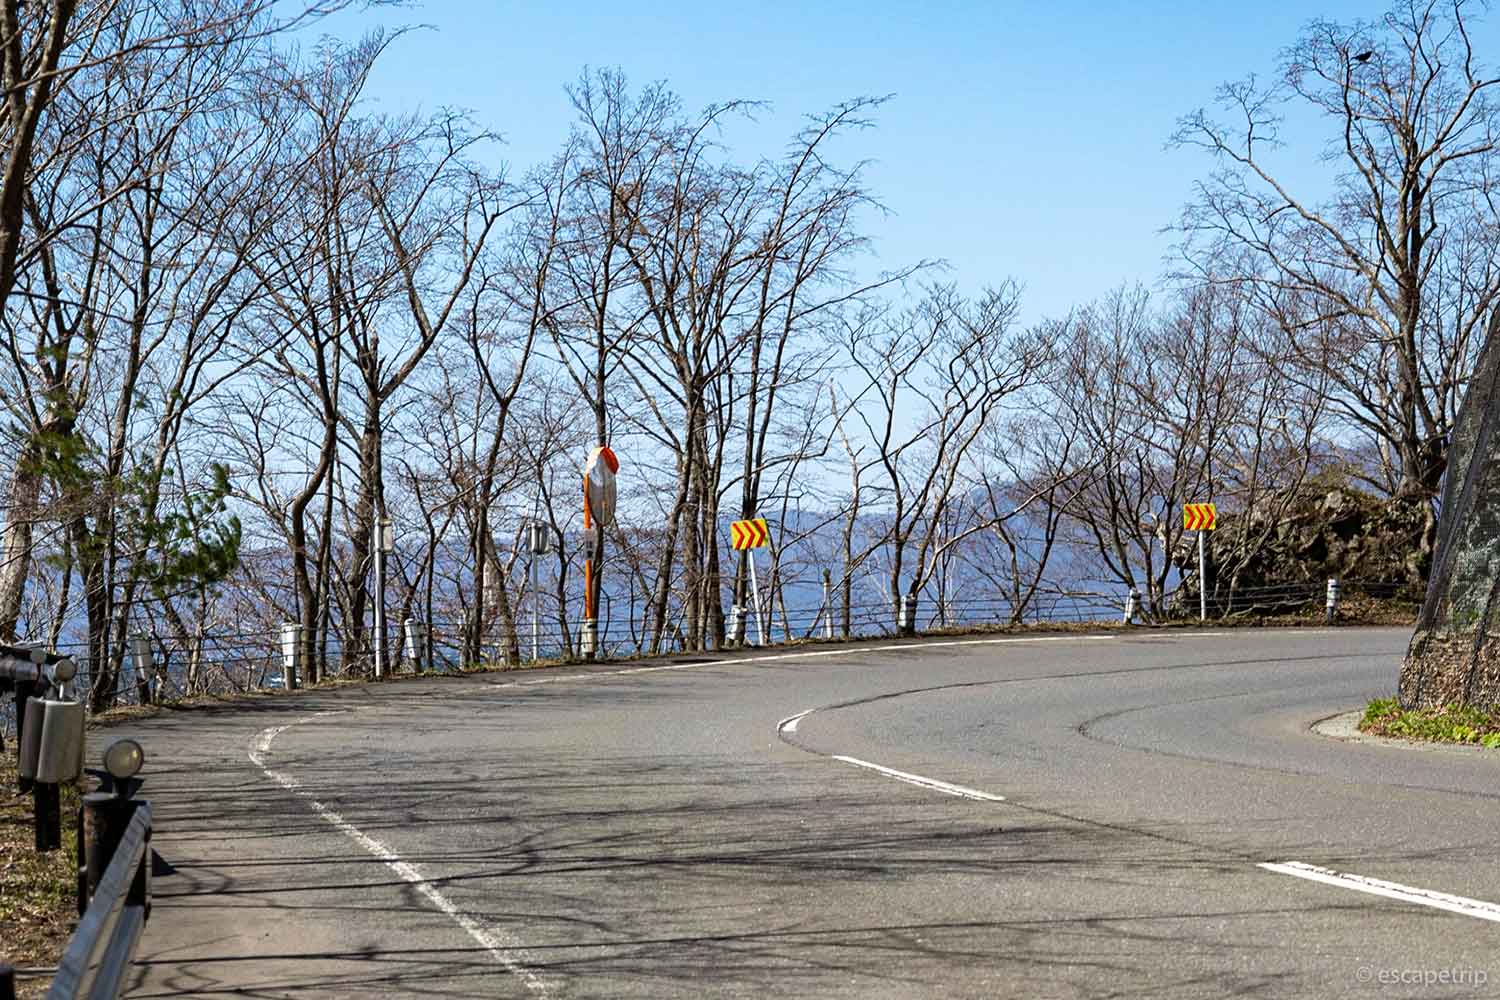 十和田湖と湖畔の道路